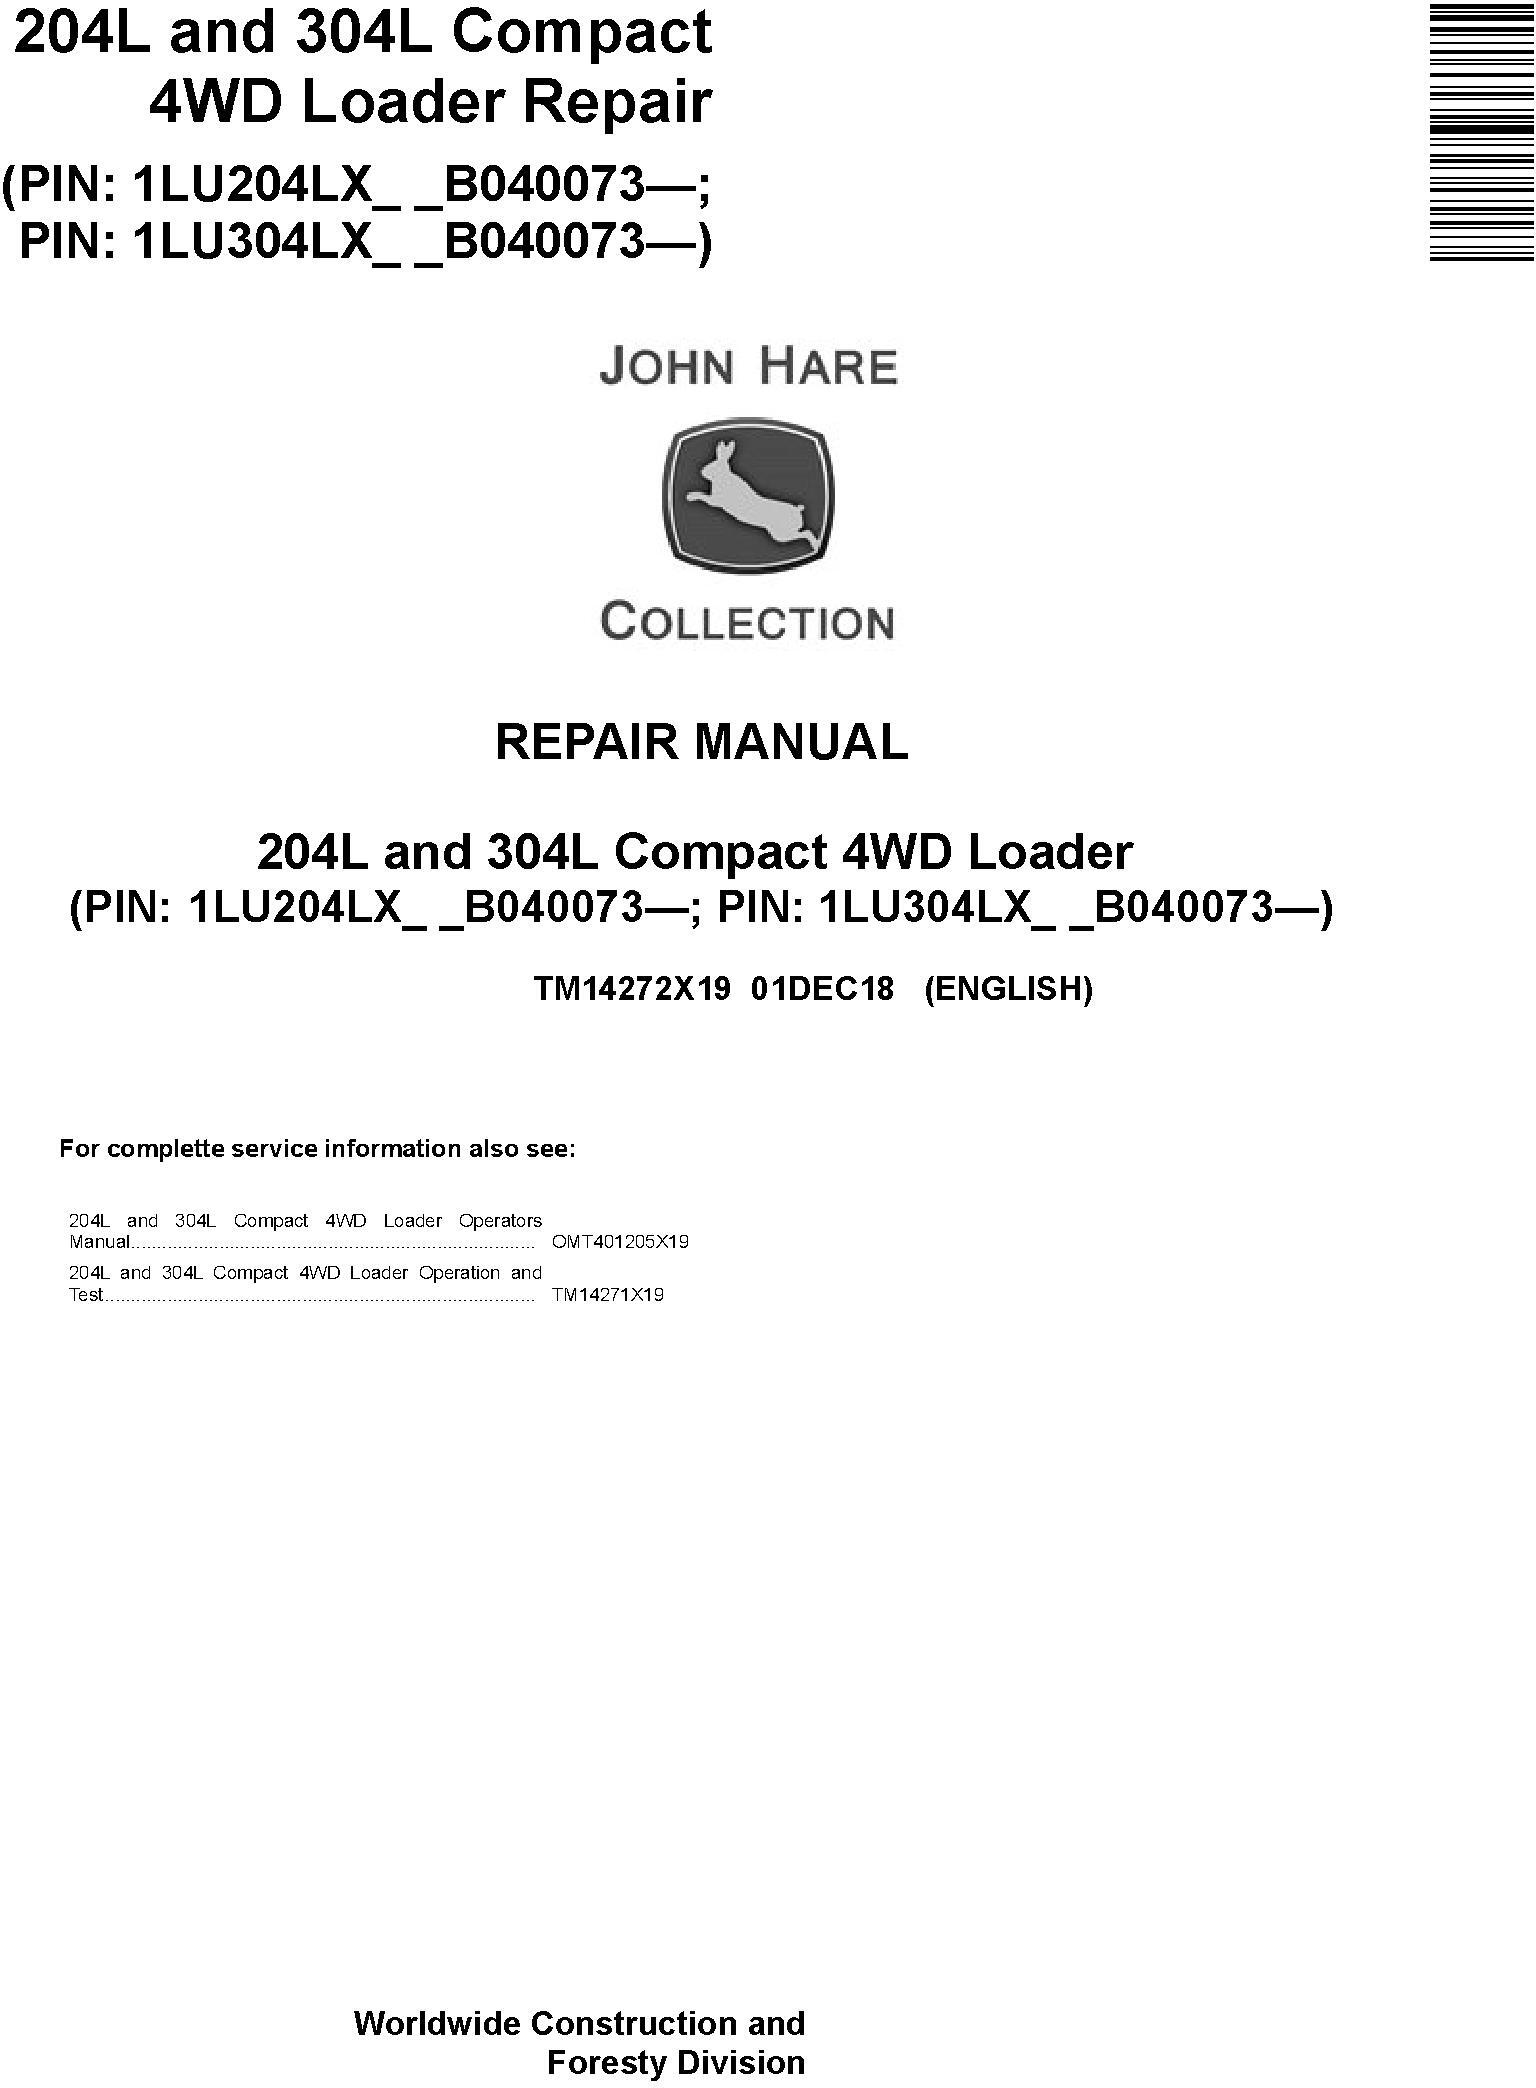 John Deere 204L and 304L (SN. B040073-) Compact 4WD Loader Service Repair Manual (TM14272X19) - 19066